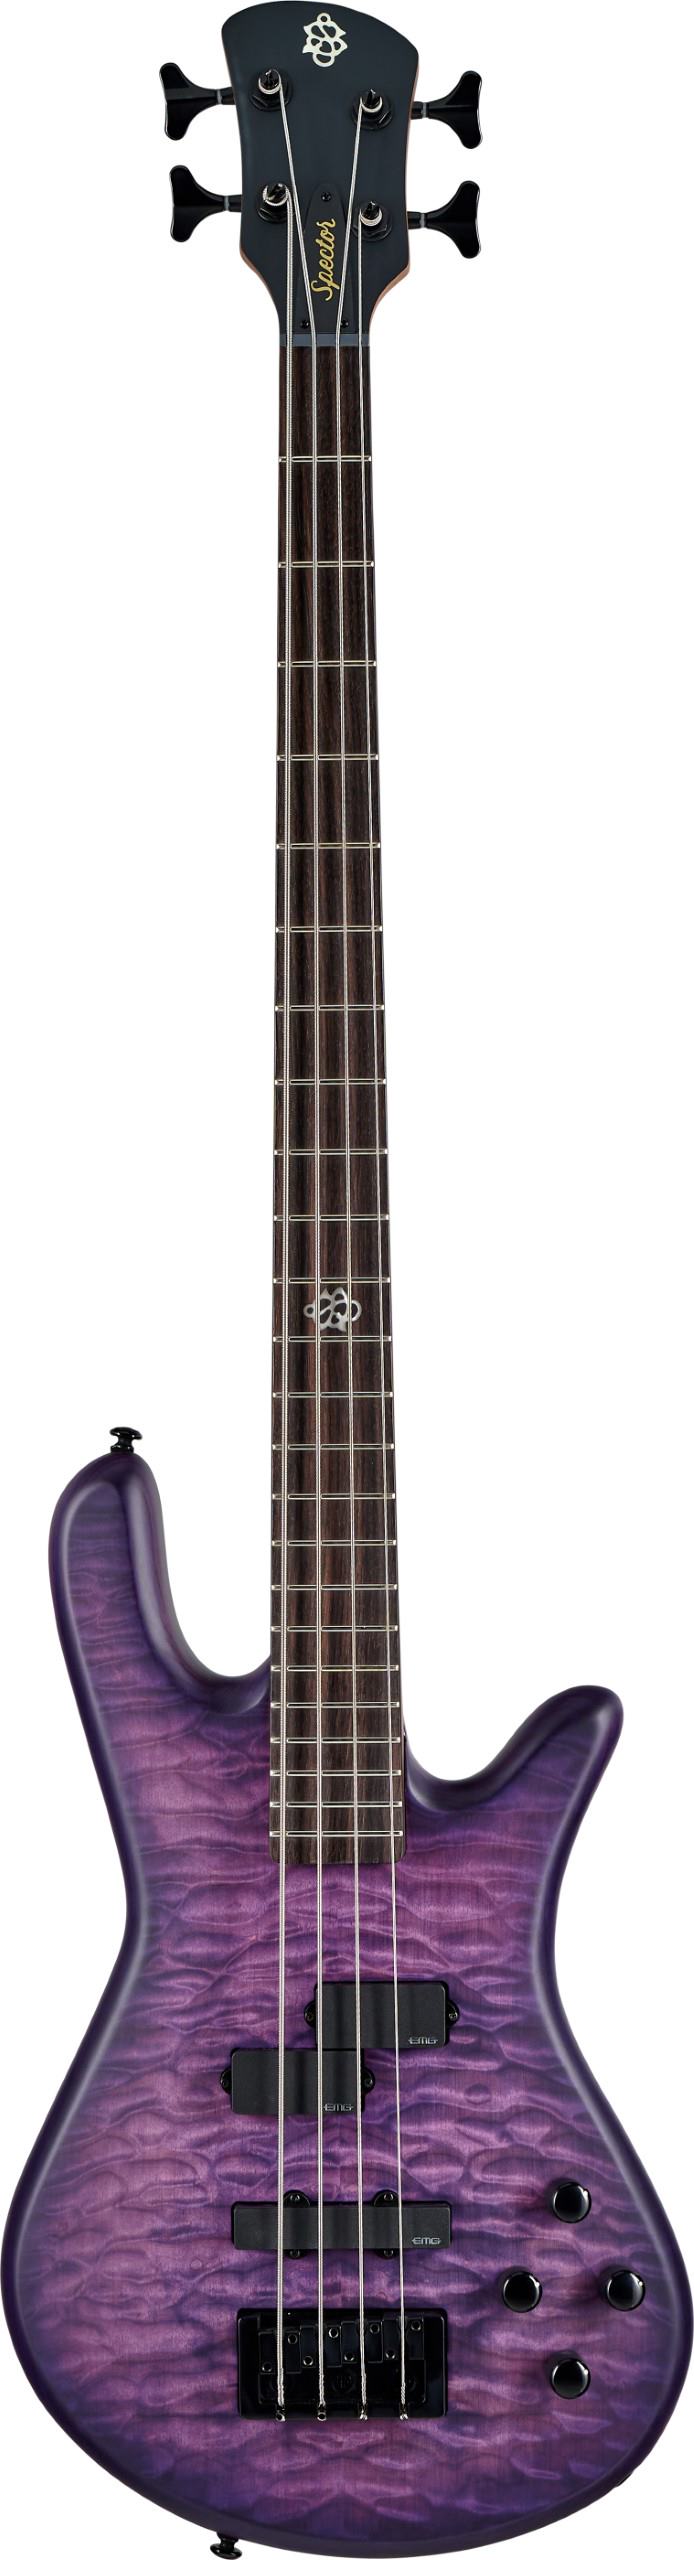 Spector NSPULSE4UVM NS Pulse Electric Bass w/ EMG Pickups - Ultra Violet Matte